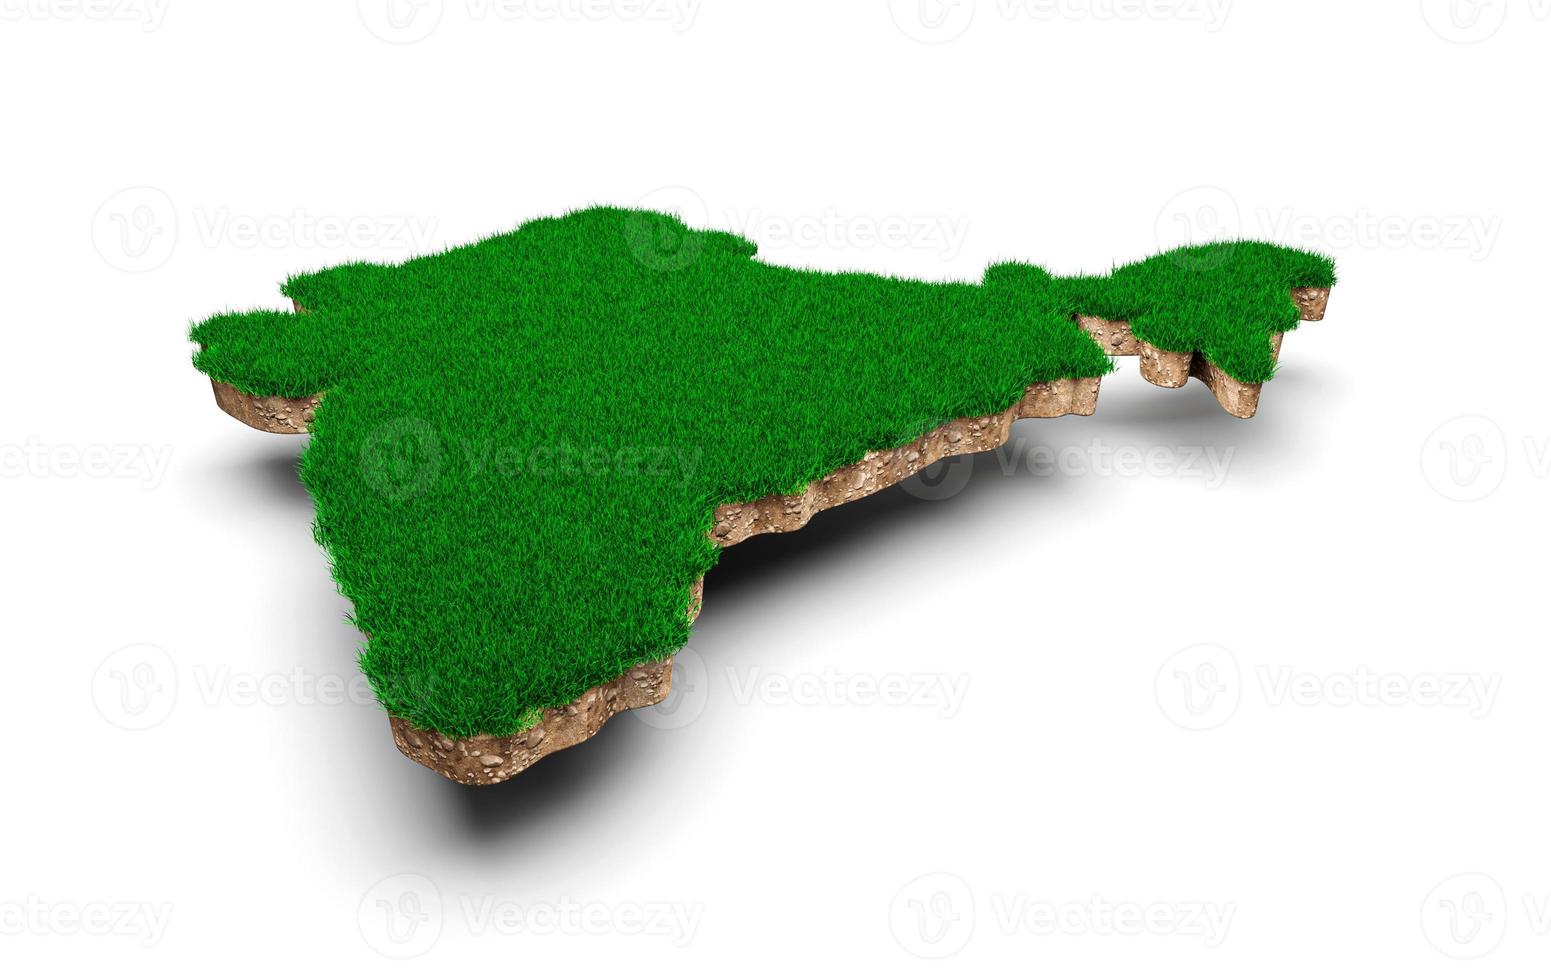 carte de l'inde coupe transversale de la géologie des sols avec de l'herbe verte illustration 3d photo